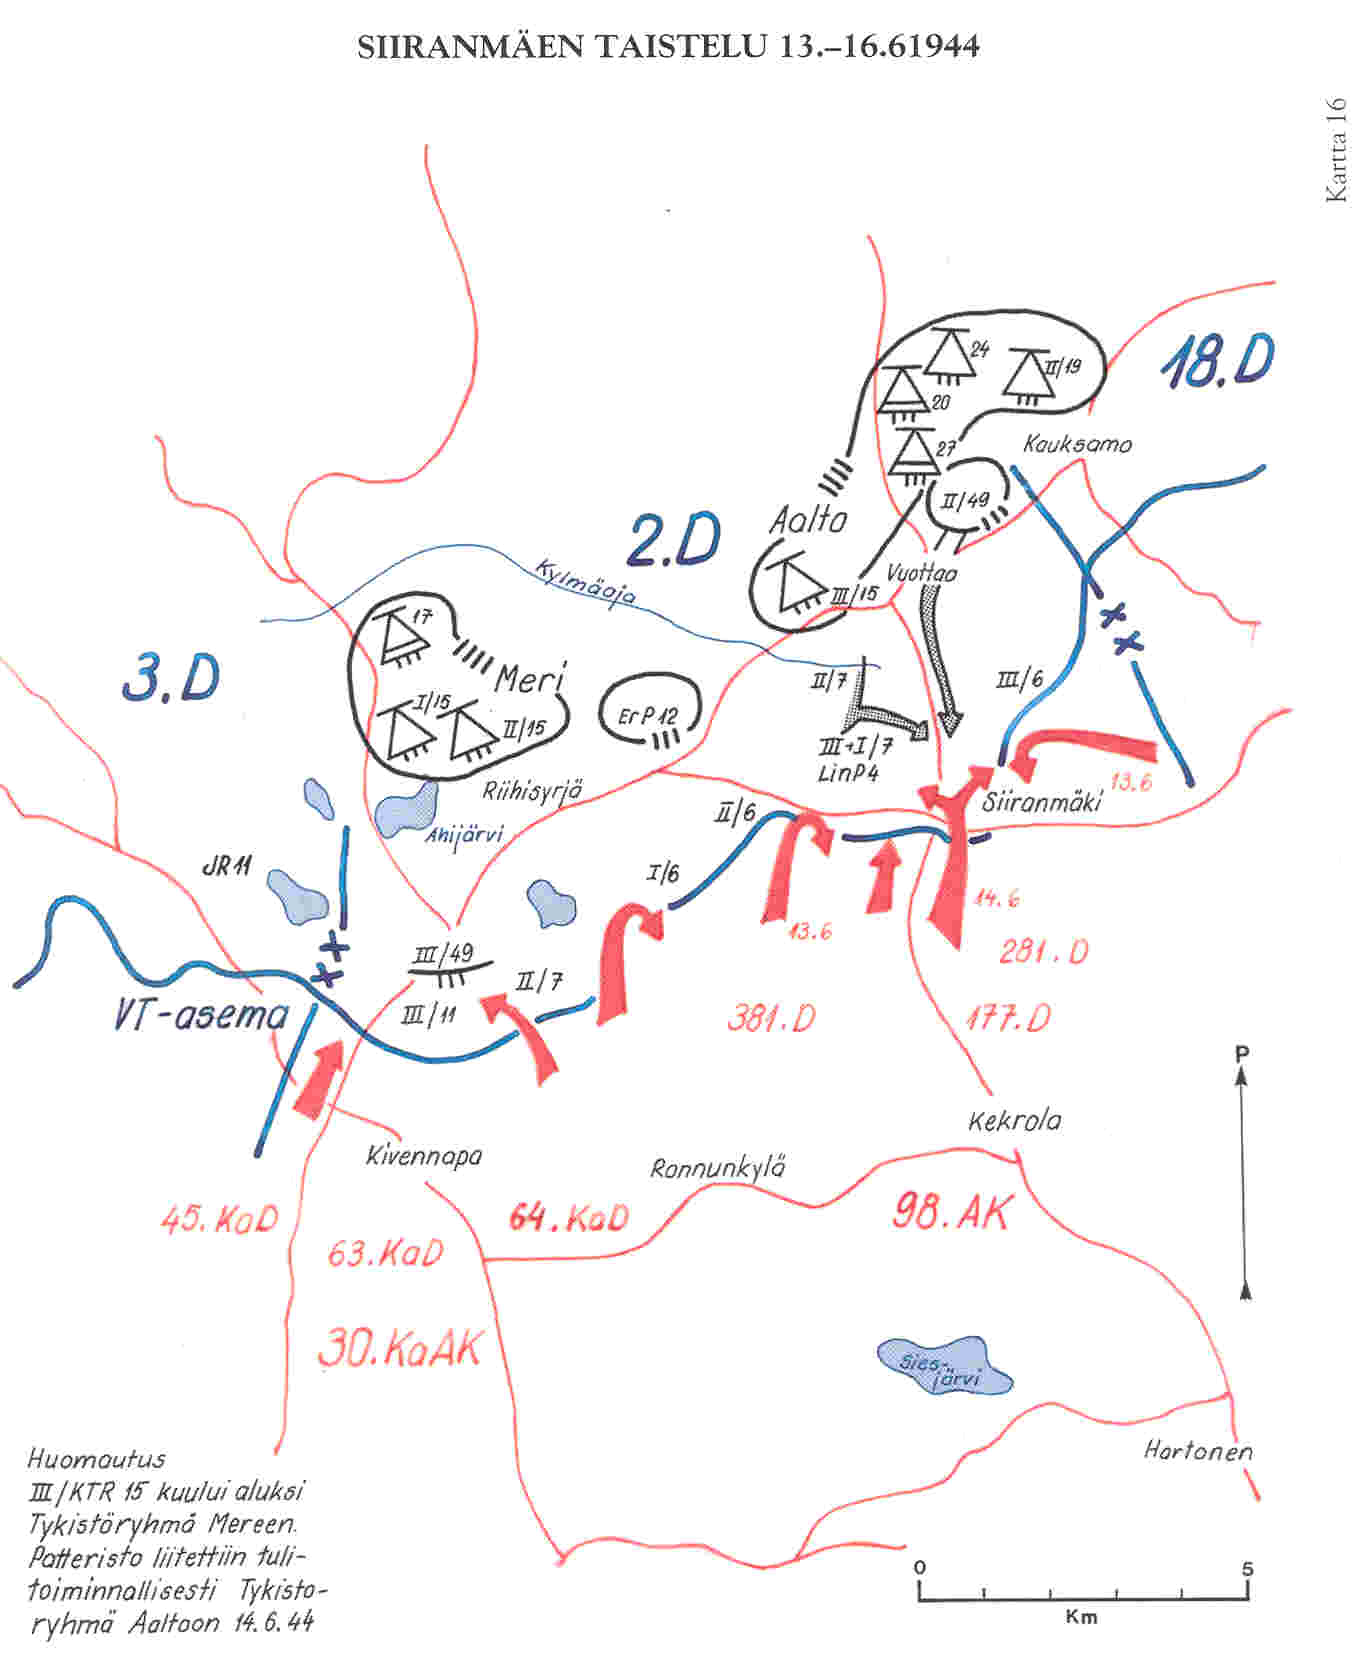 Siiranmäen taistelu 13.-16.6.1944